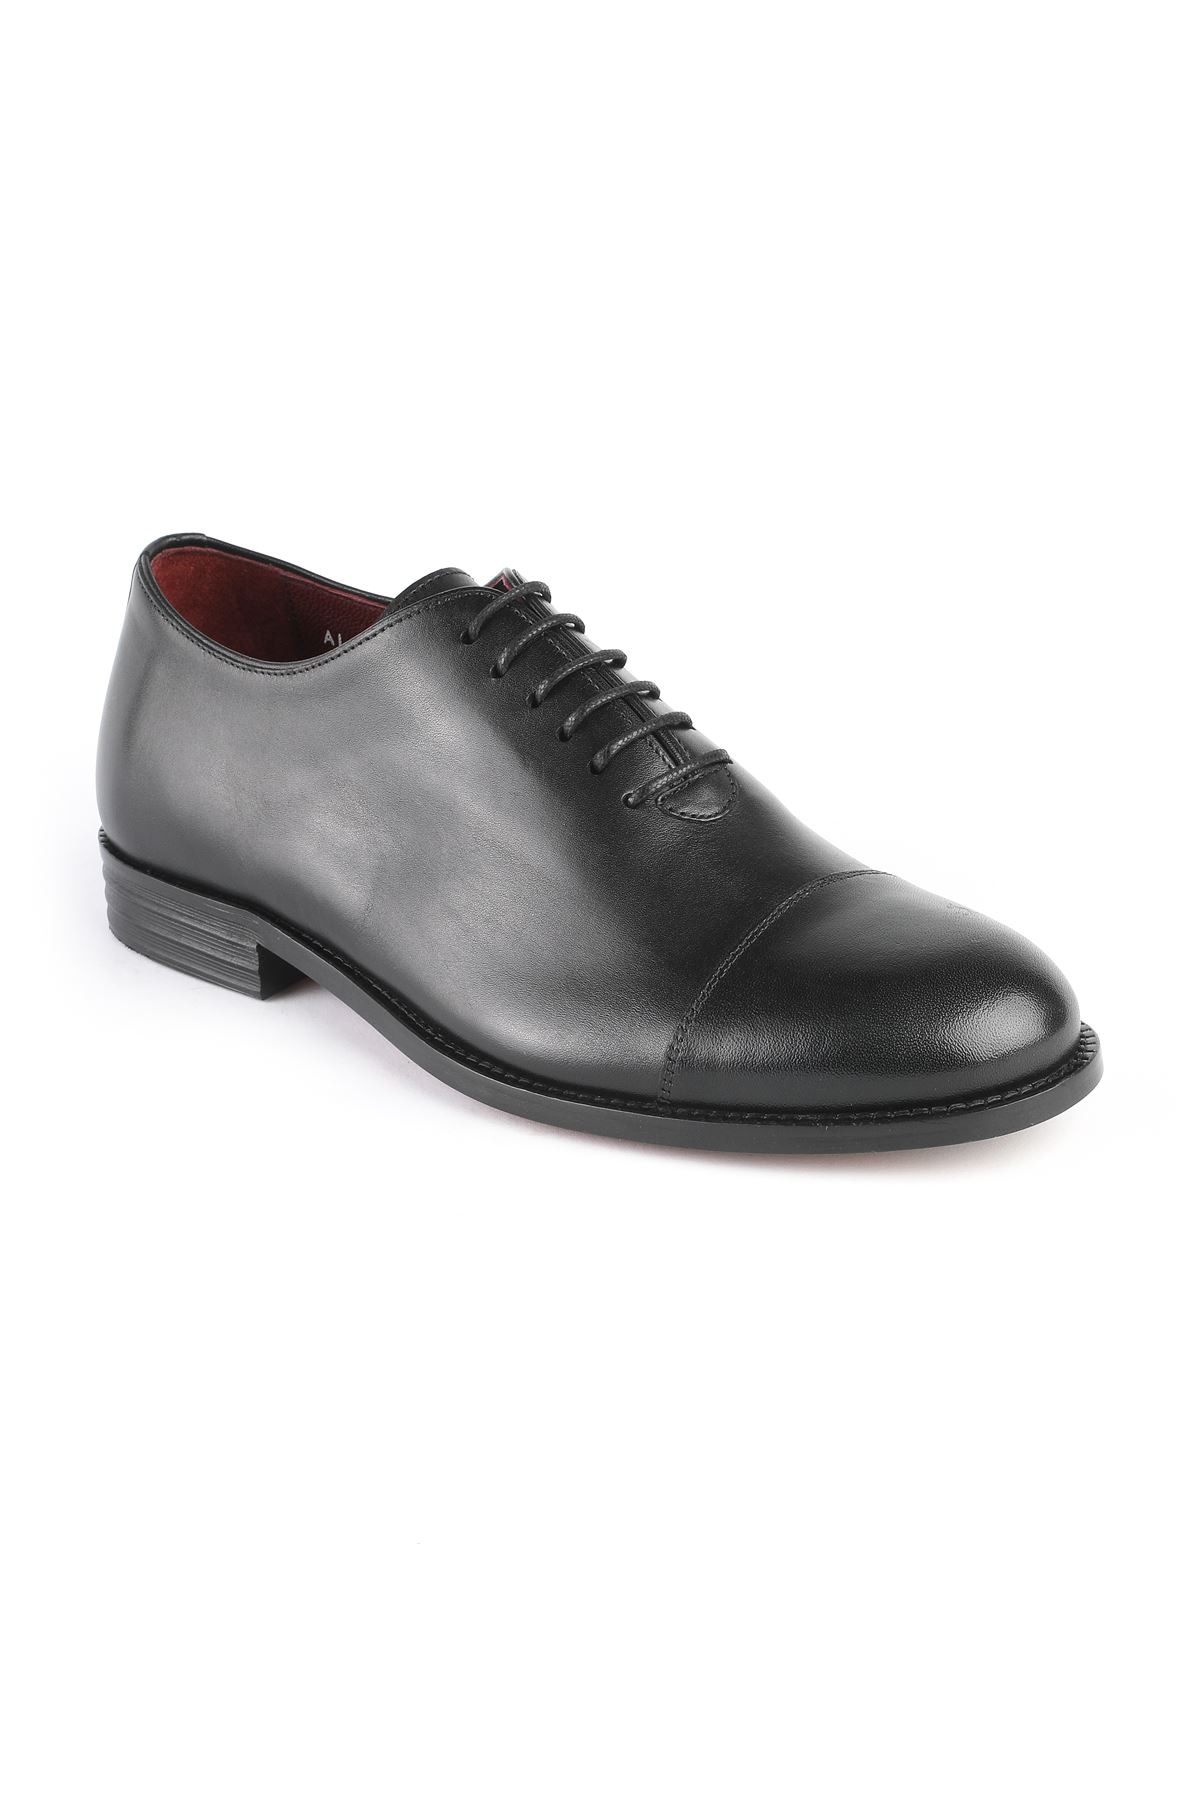 Libero Klasik Erkek Ayakkabı Modelleri Hangileridir?